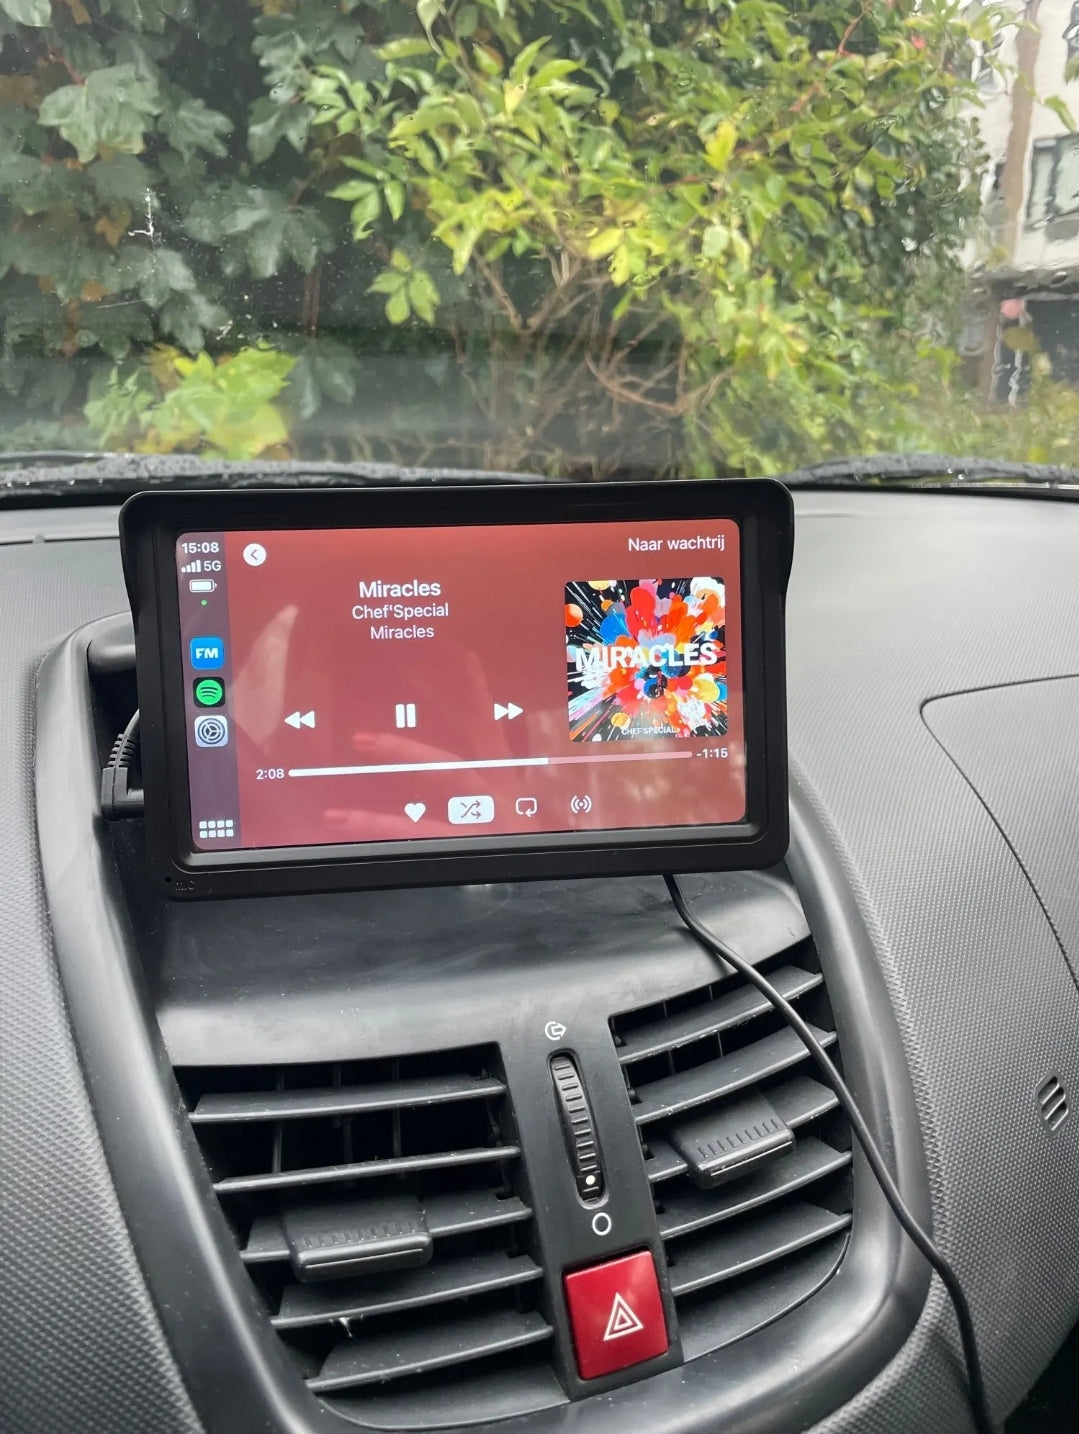 CarPlay beeldscherm 7-inch Draadloze Multimedia Videospeler Touchscreen en Achteruitrijcamera als optie